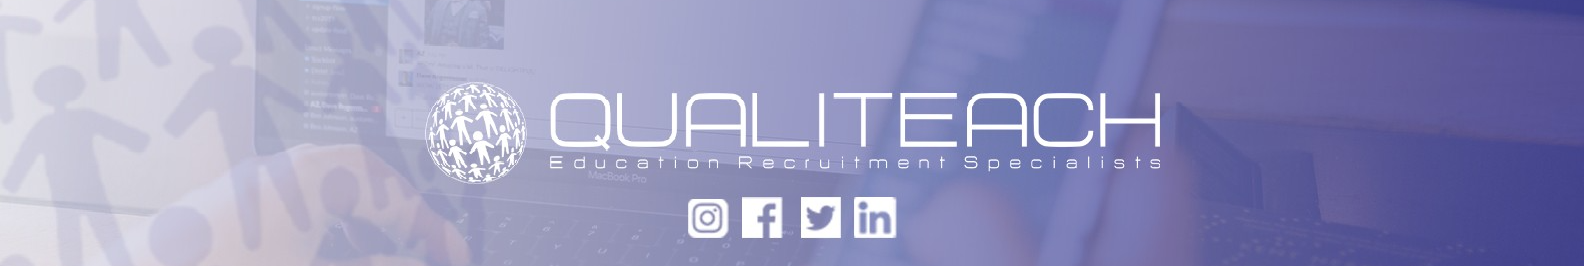 Qualiteach Ltd background